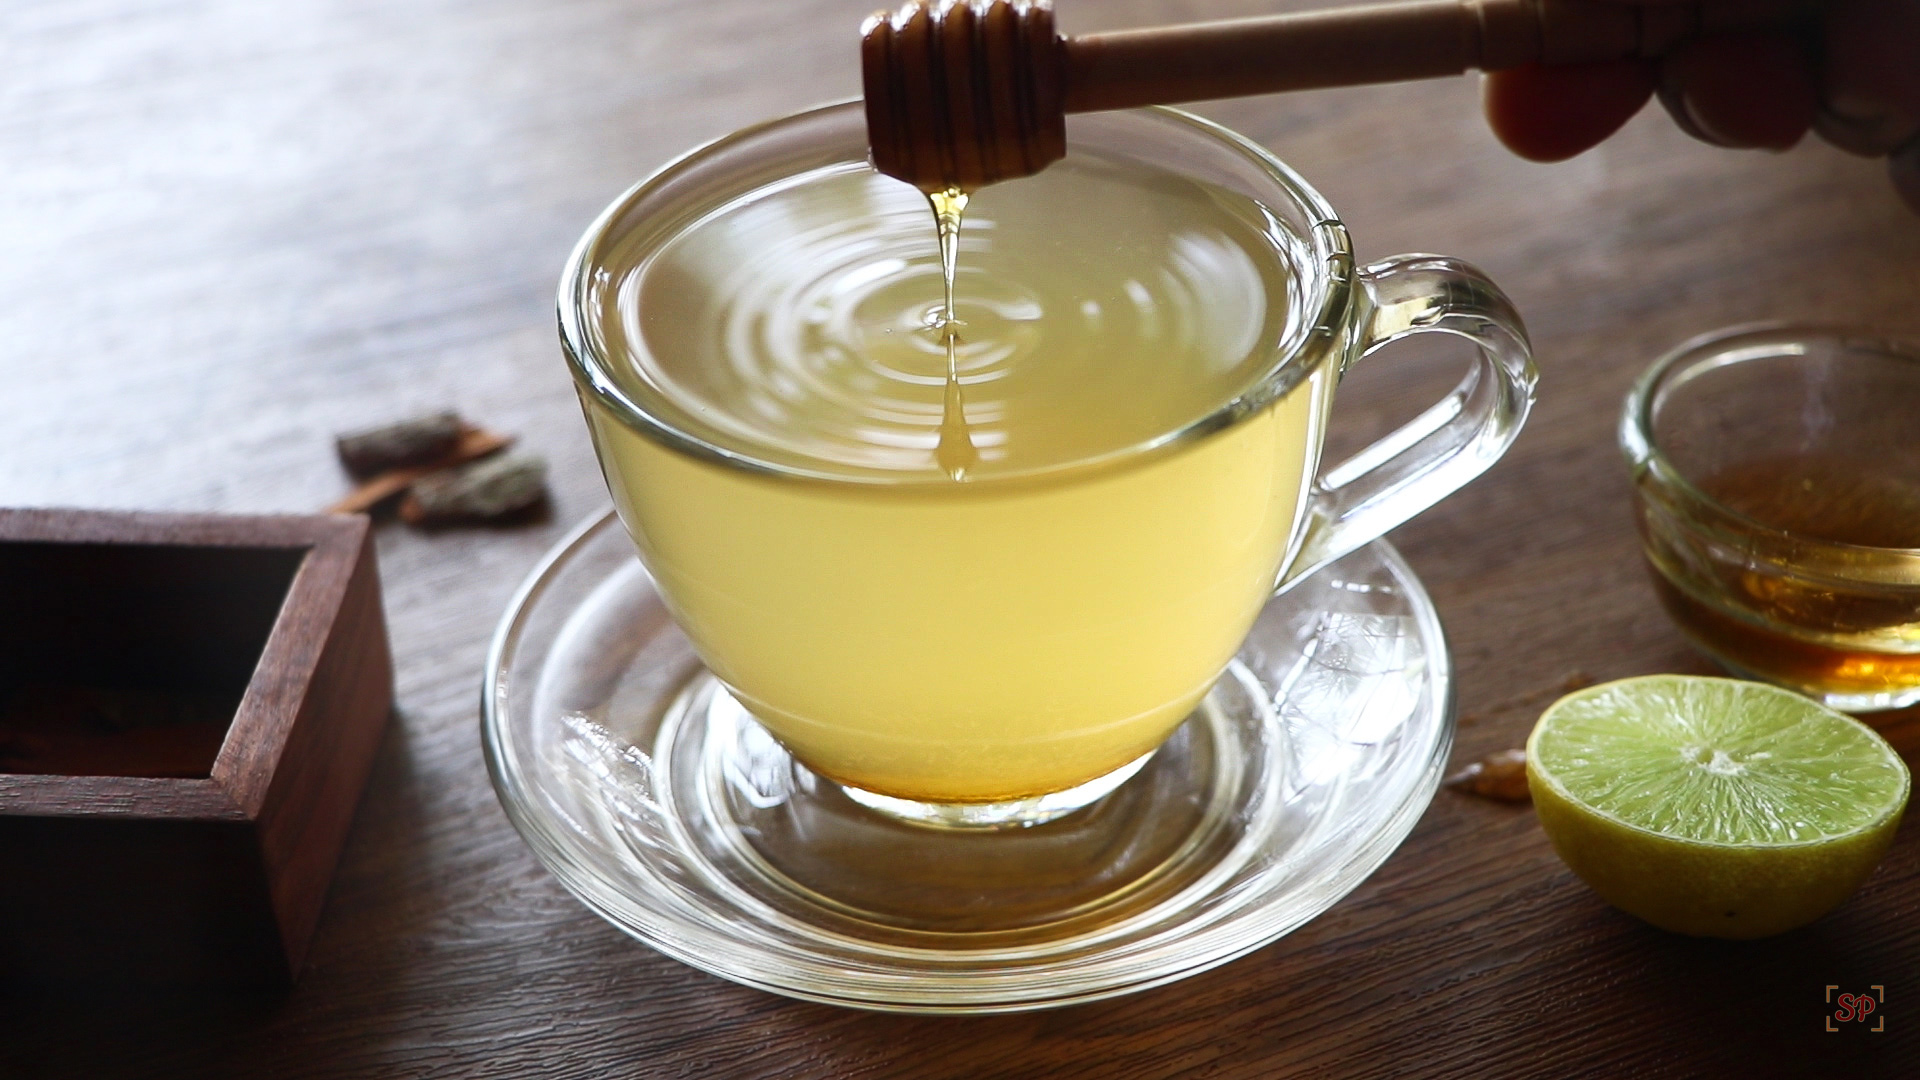 Green Tea Recipe  How to make Green Tea - Sharmis Passions